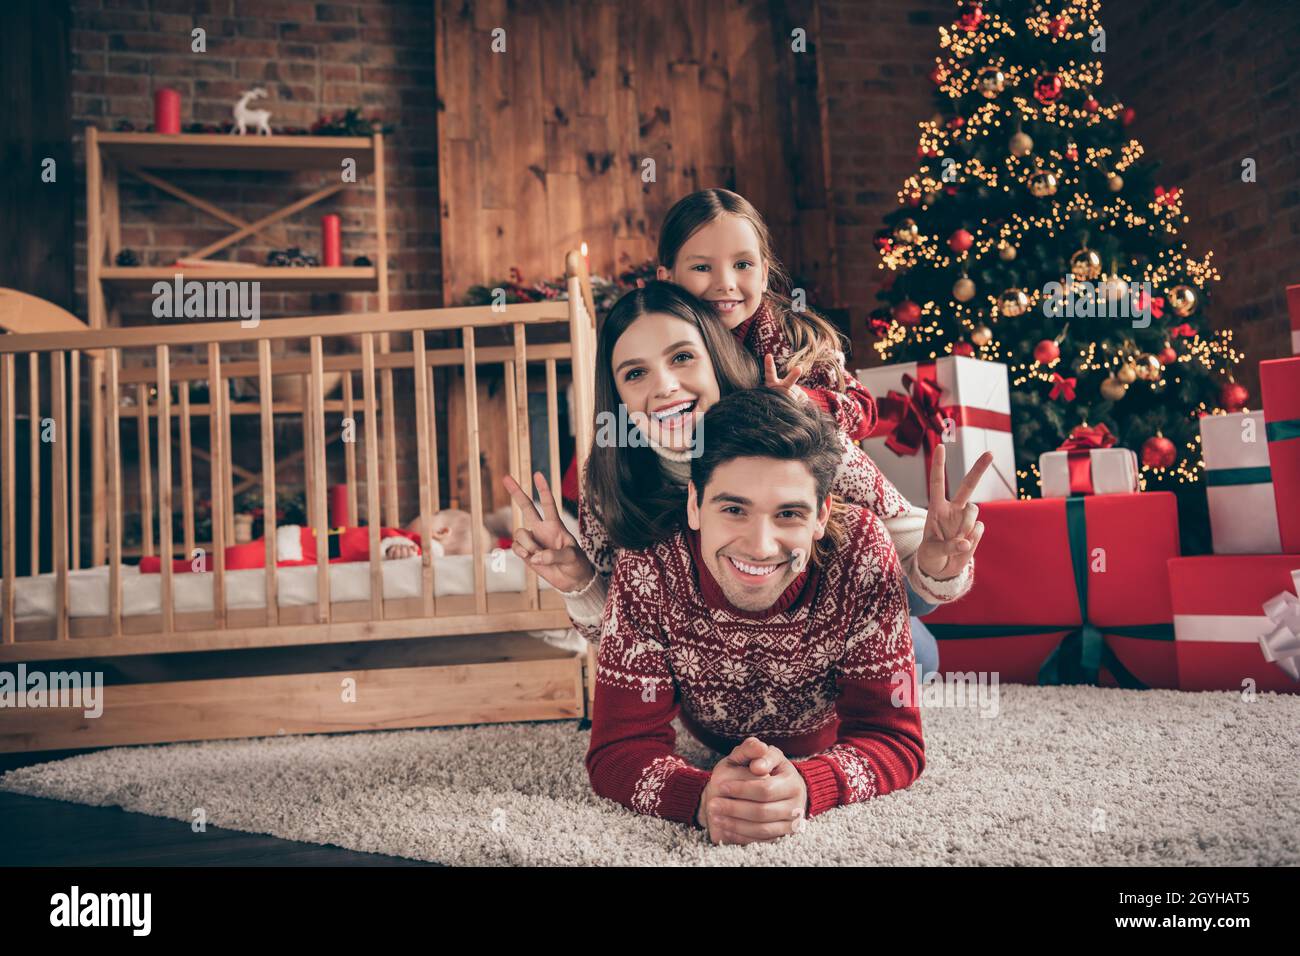 Foto von schönen Familie Mutter Vater Tochter neu geboren Sohn zeigen  V-Zeichen tragen roten Pullover am weihnachtstag im Loft Stockfotografie -  Alamy